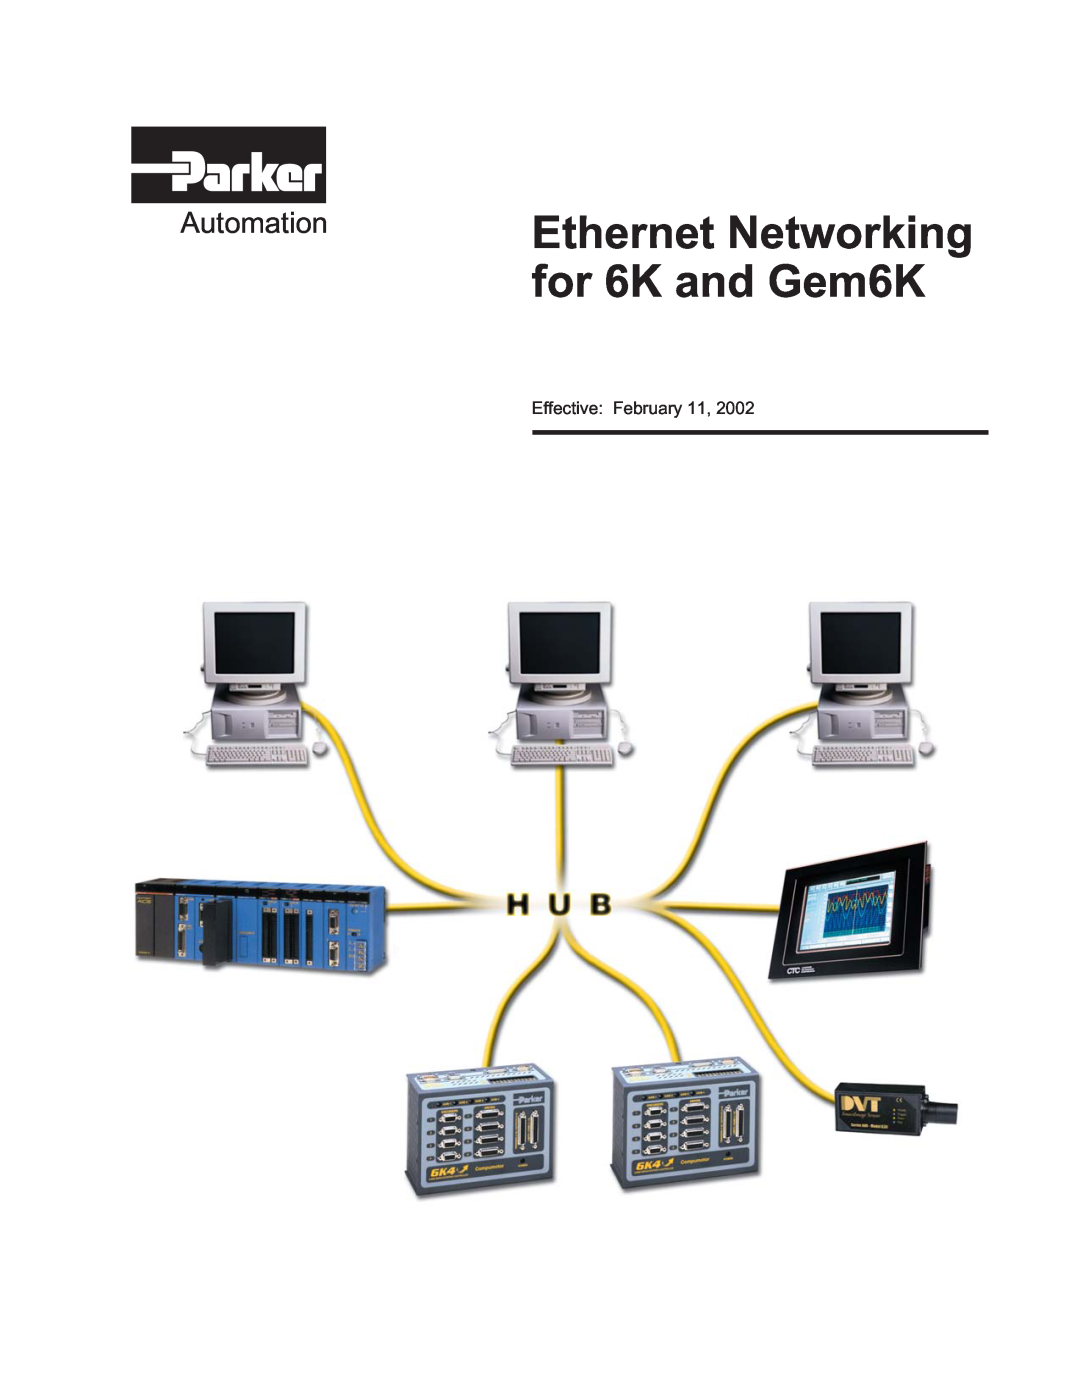 Parker Hannifin GEM6K manual Ethernet Networking for 6K and Gem6K, Automation, Effective February 11 